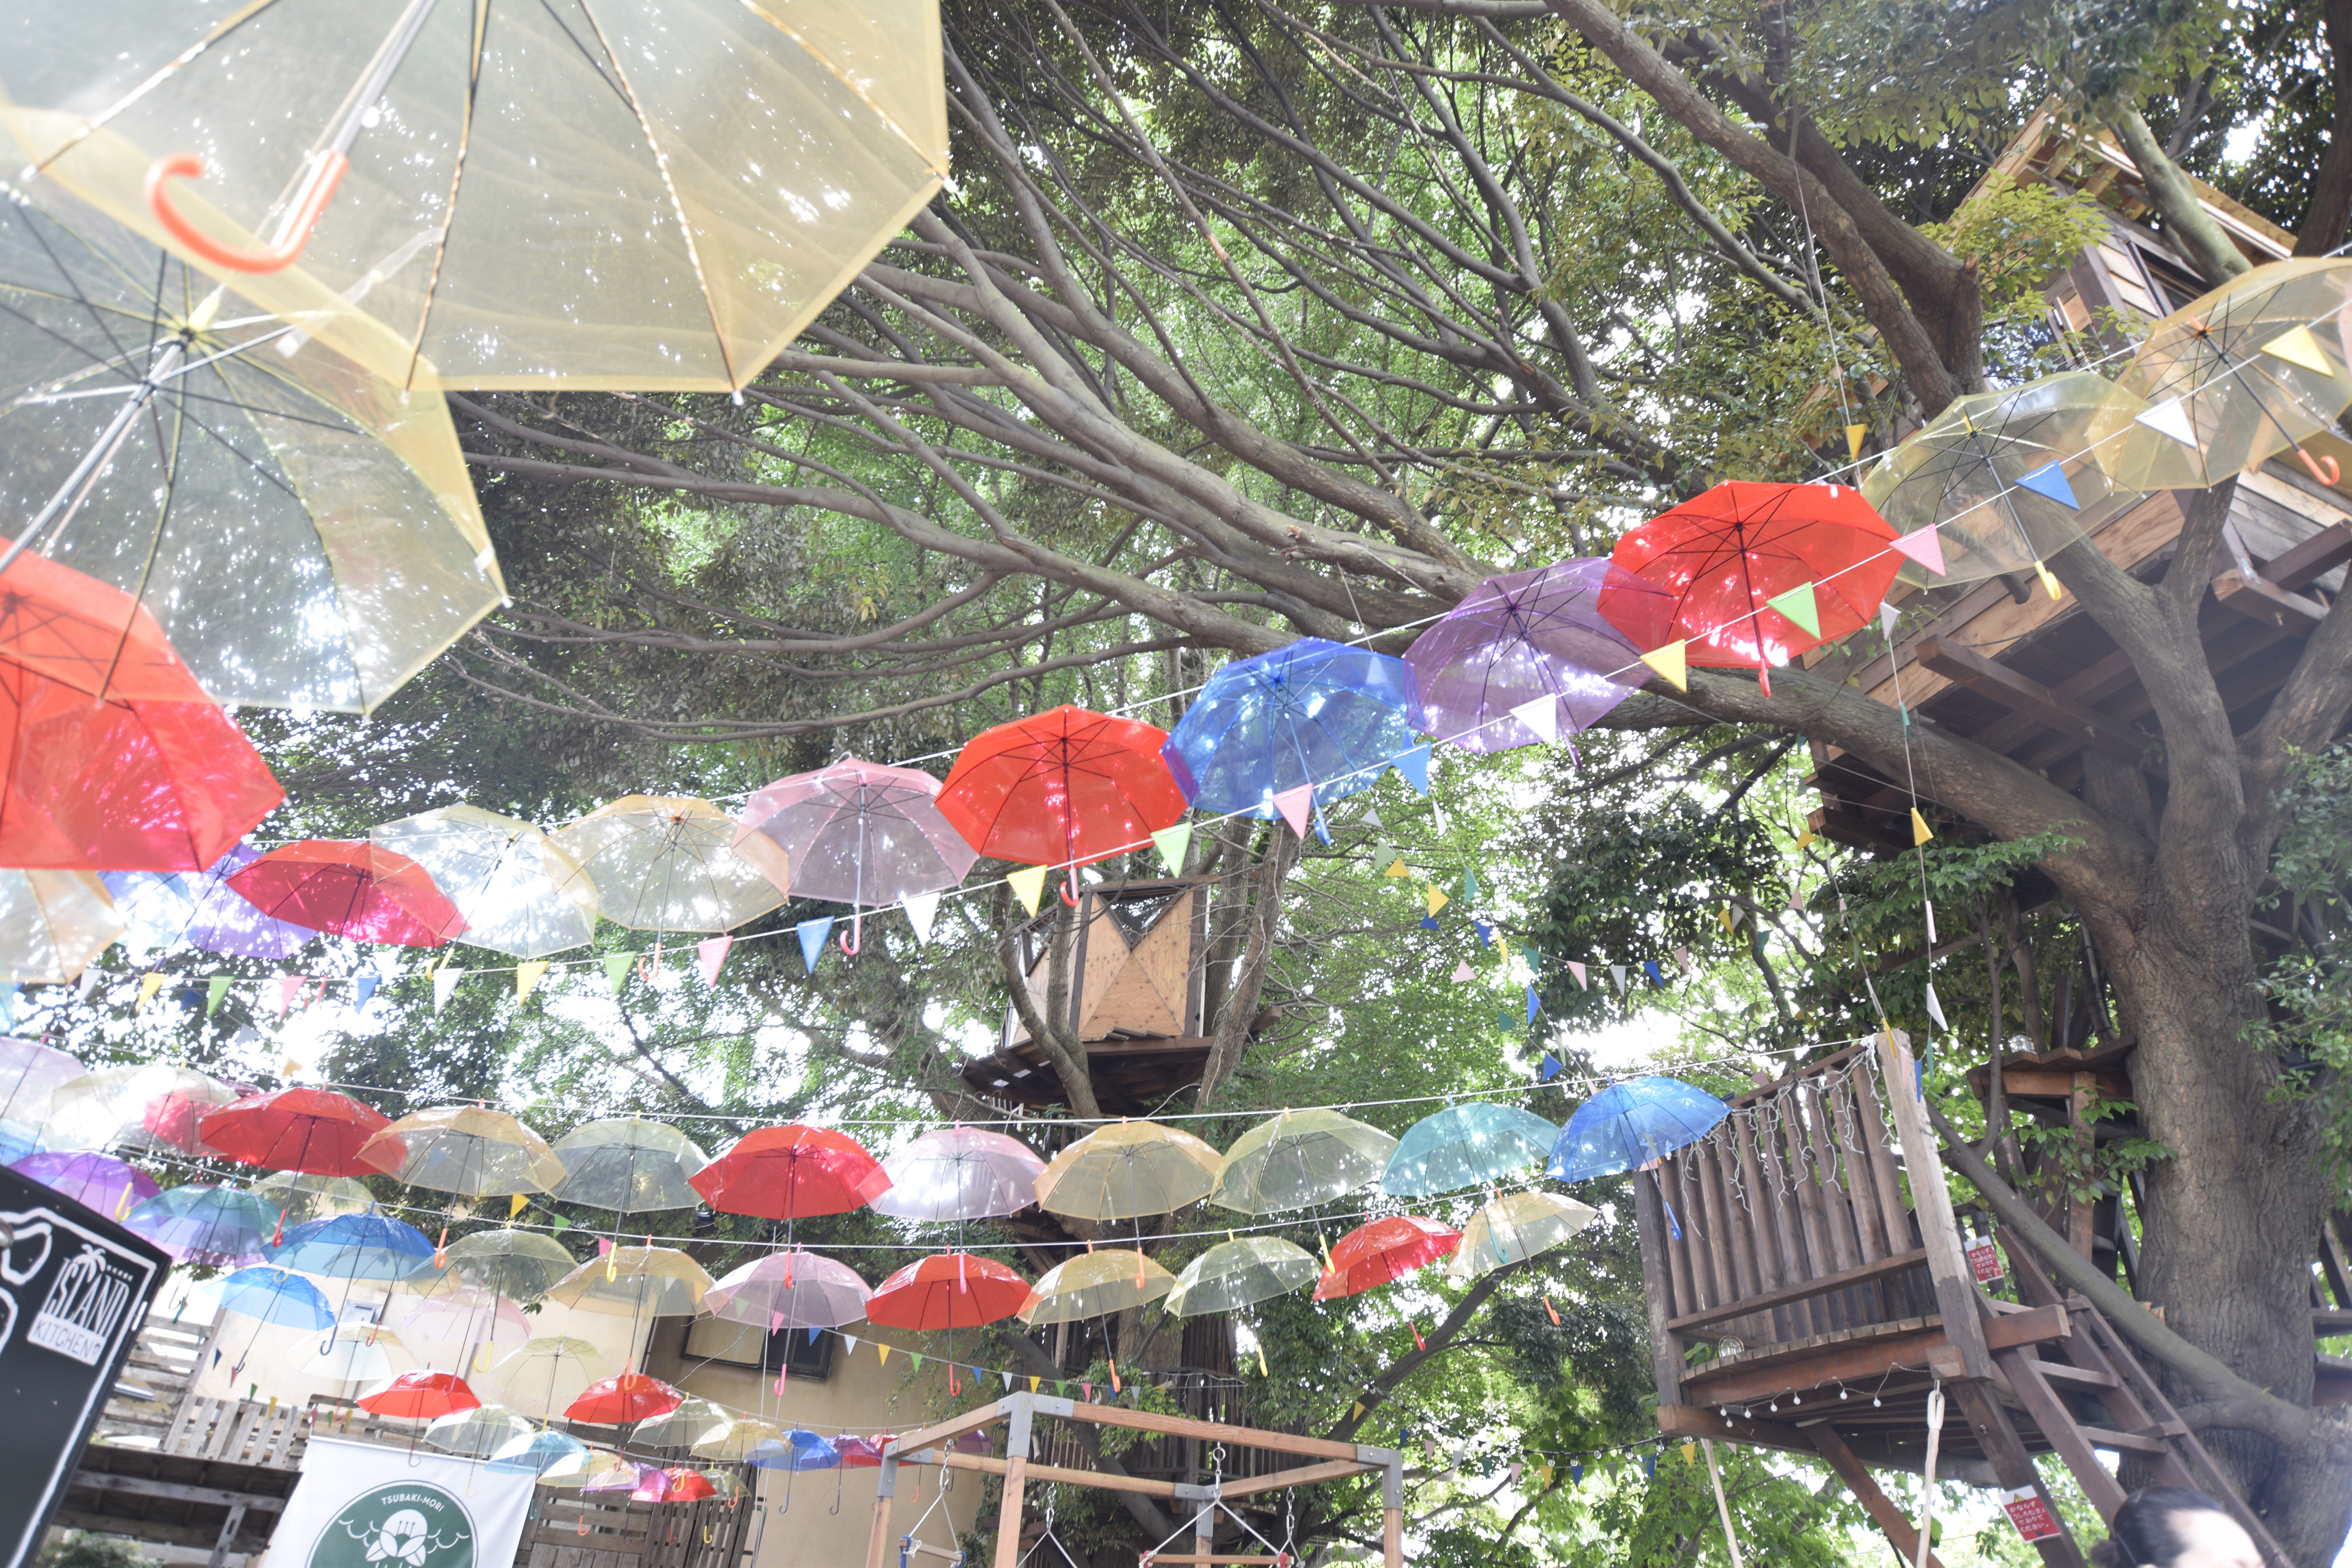 千葉市初 ツリーハウスの 椿森コムナ が100本の傘で埋め尽くされる 傘の森 に 株式会社拓匠開発のプレスリリース